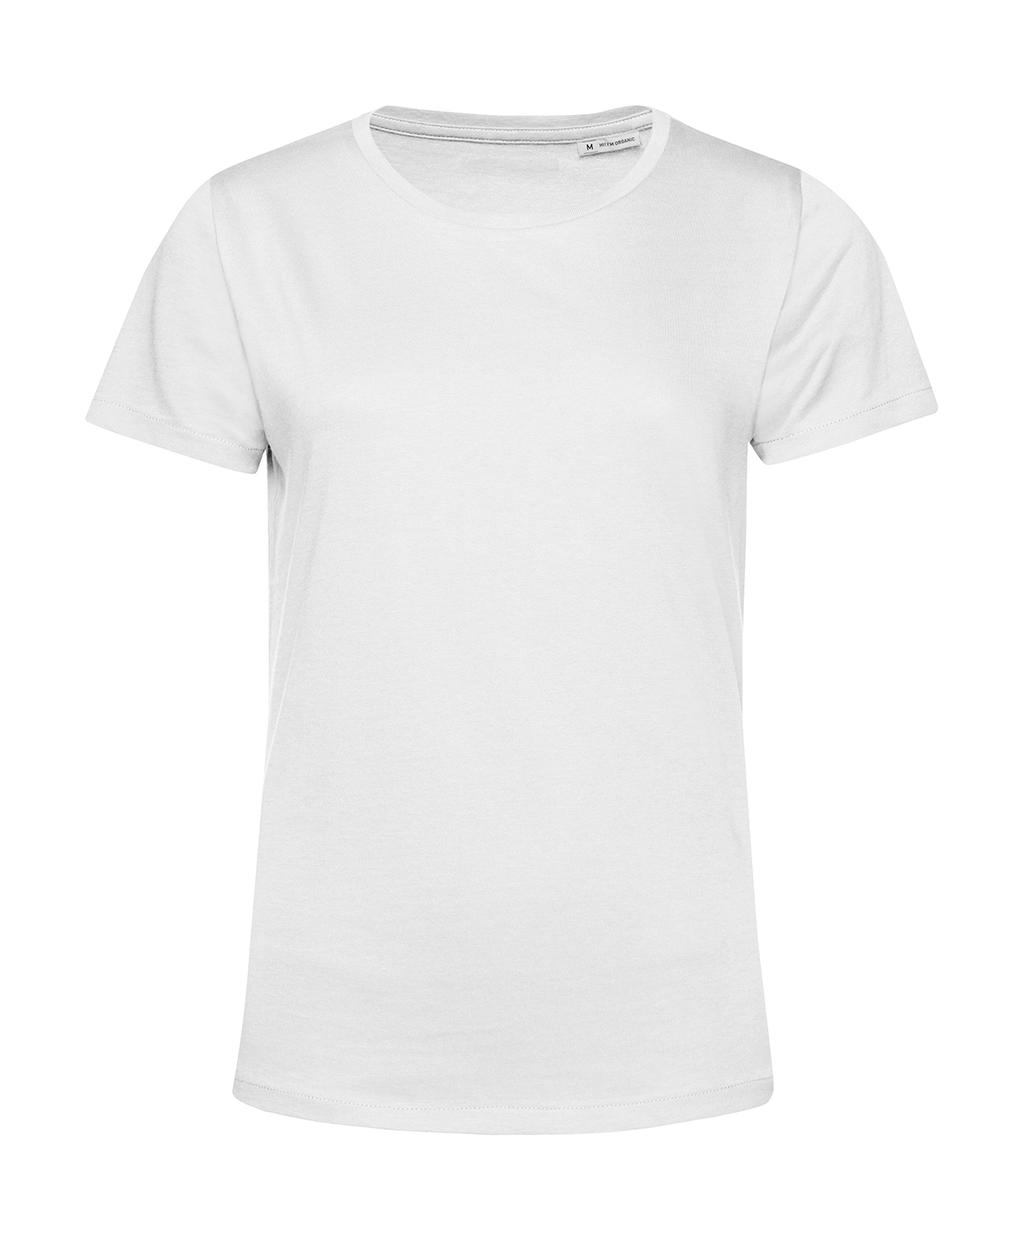 Tričko dámské BC Organic Inspire E150 - bílé, 3XL